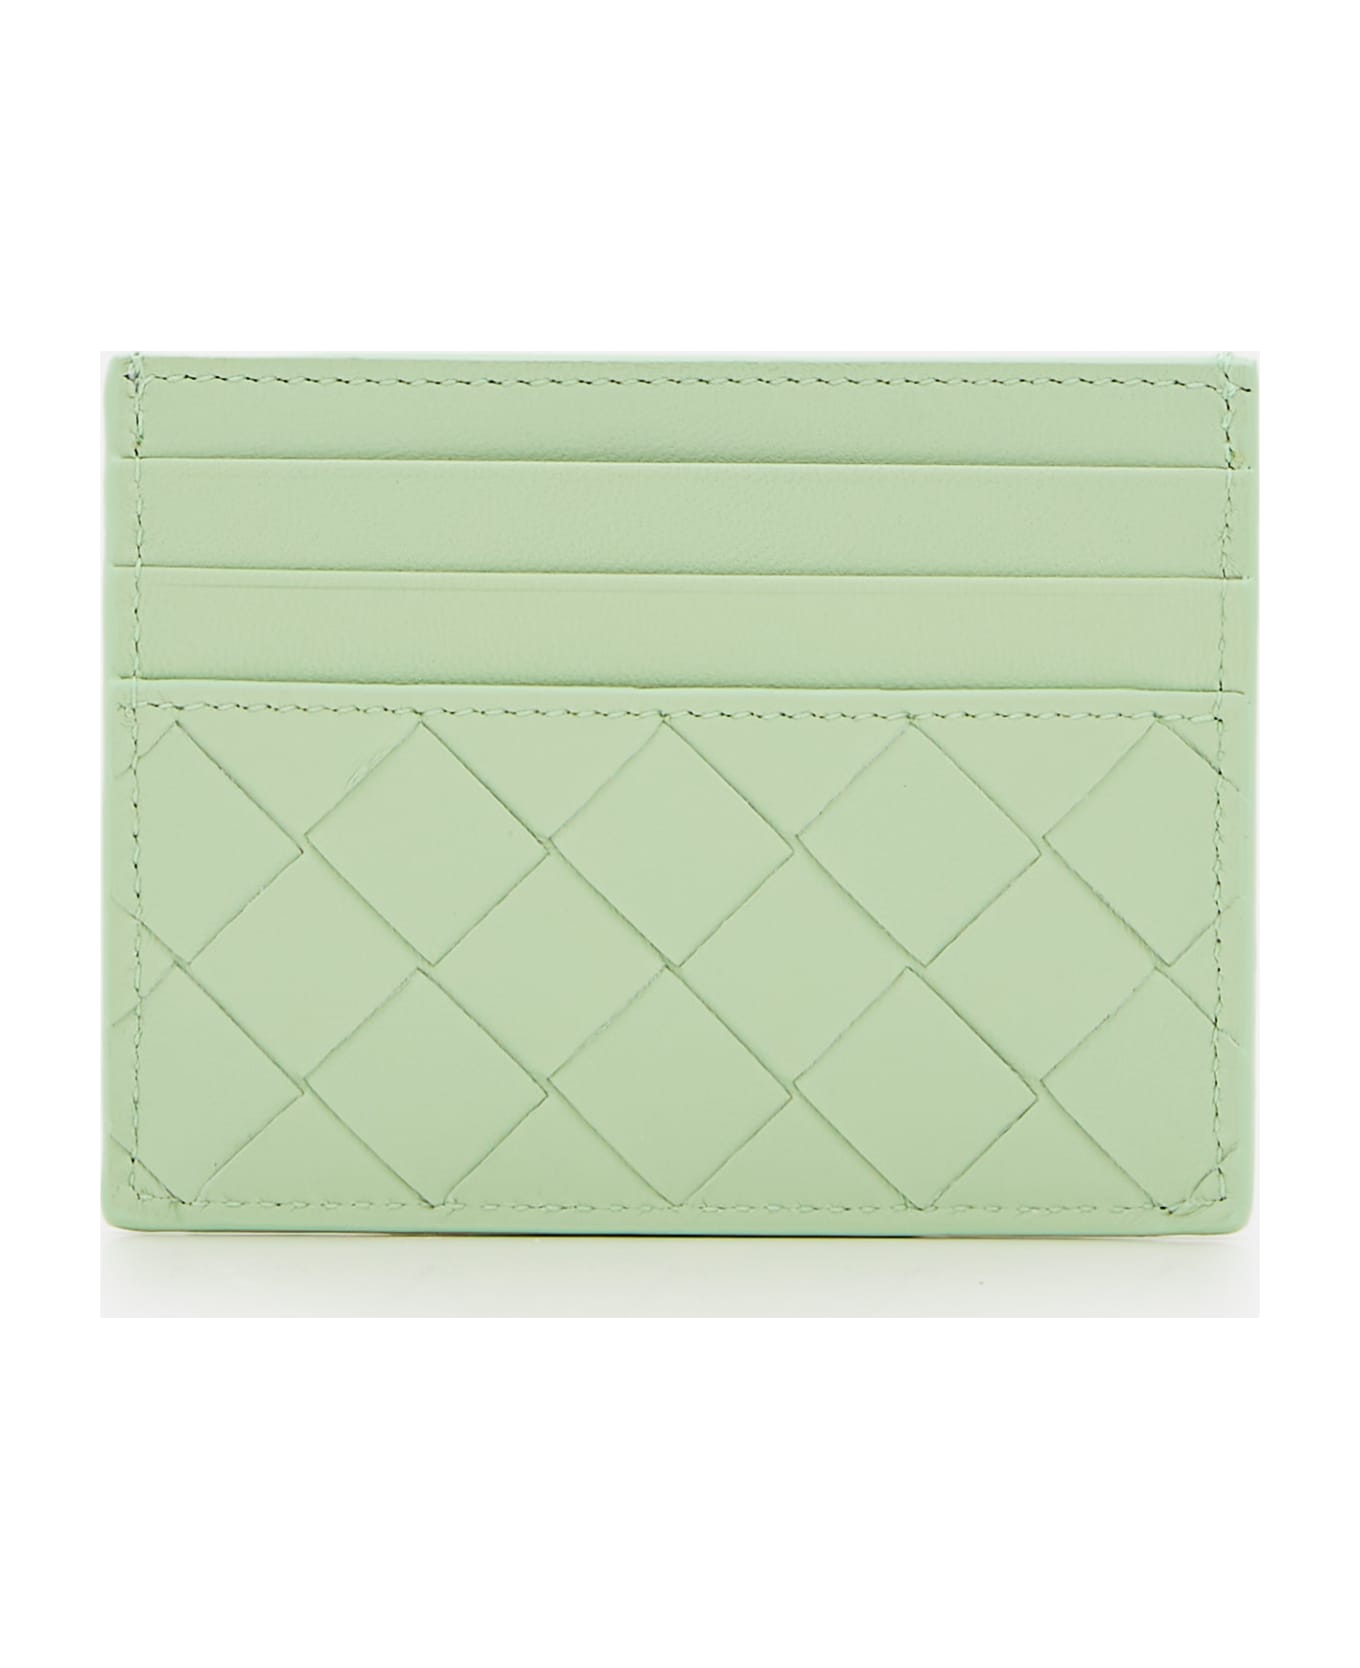 Bottega Veneta Leather Card-holder - Green